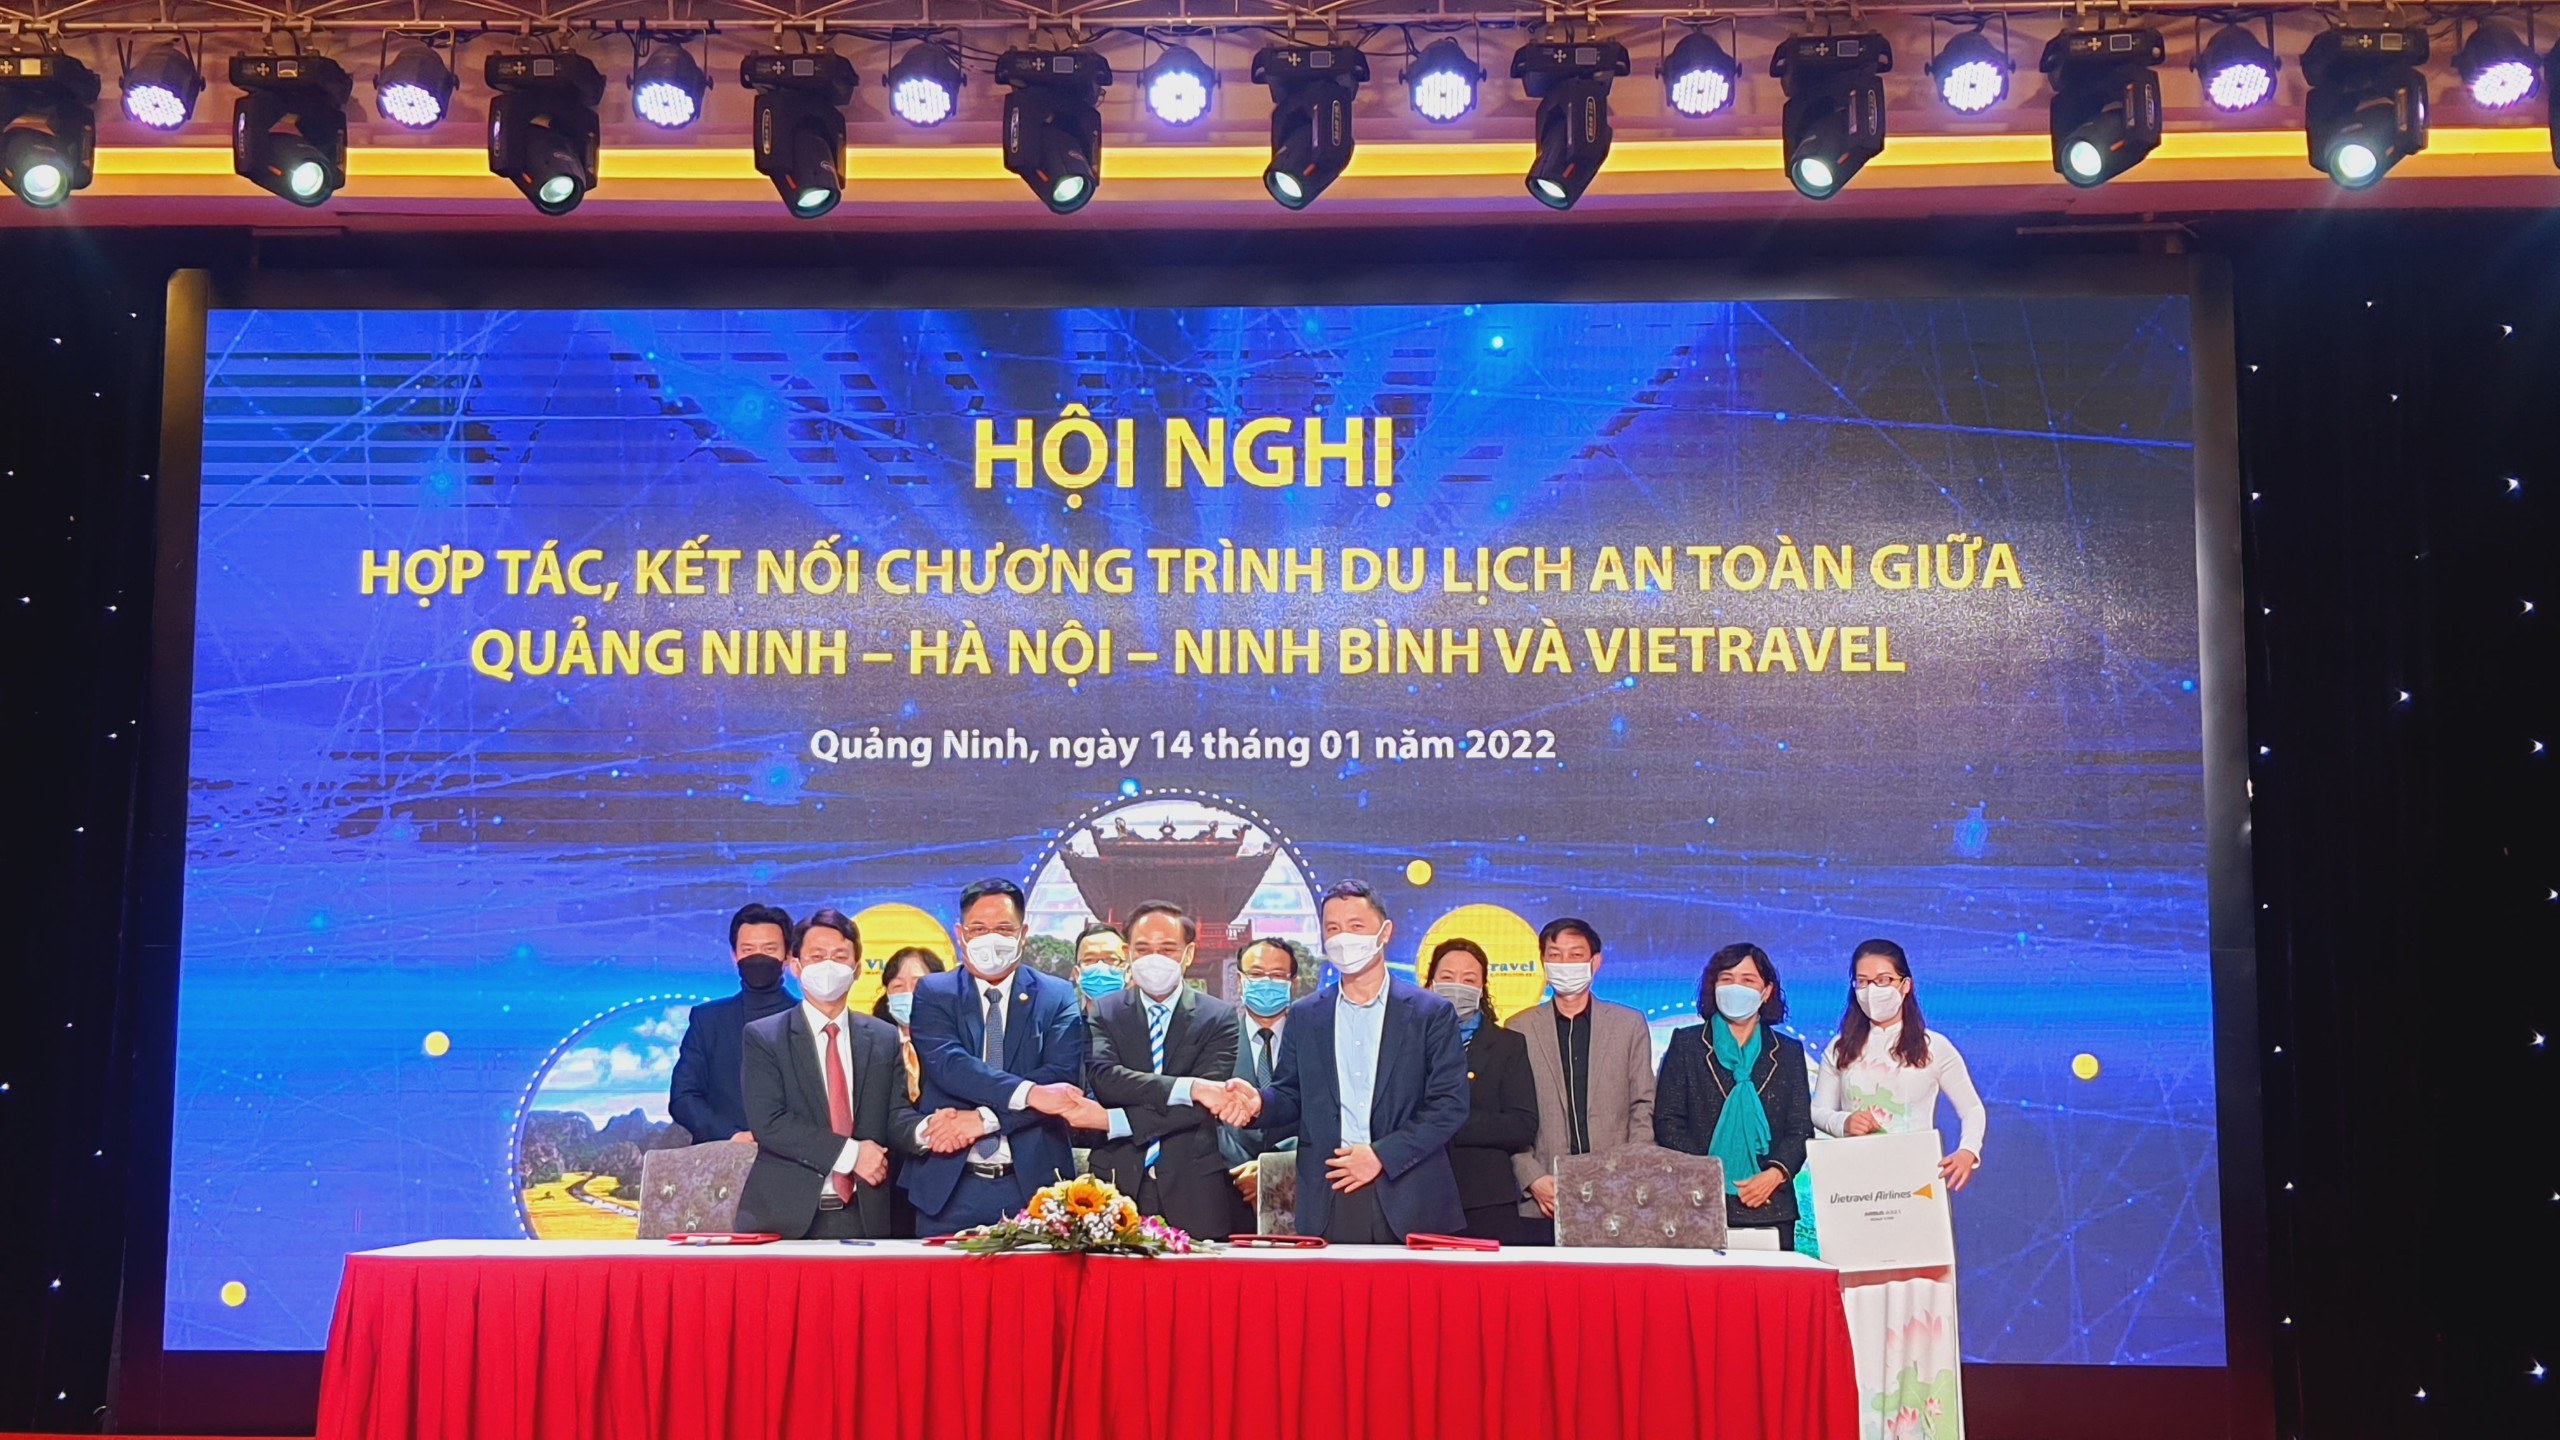 Hội nghị hợp tác, kết nối chương trình du lịch an toàn Quảng Ninh – Hà Nội – Ninh Bình và Vietravel